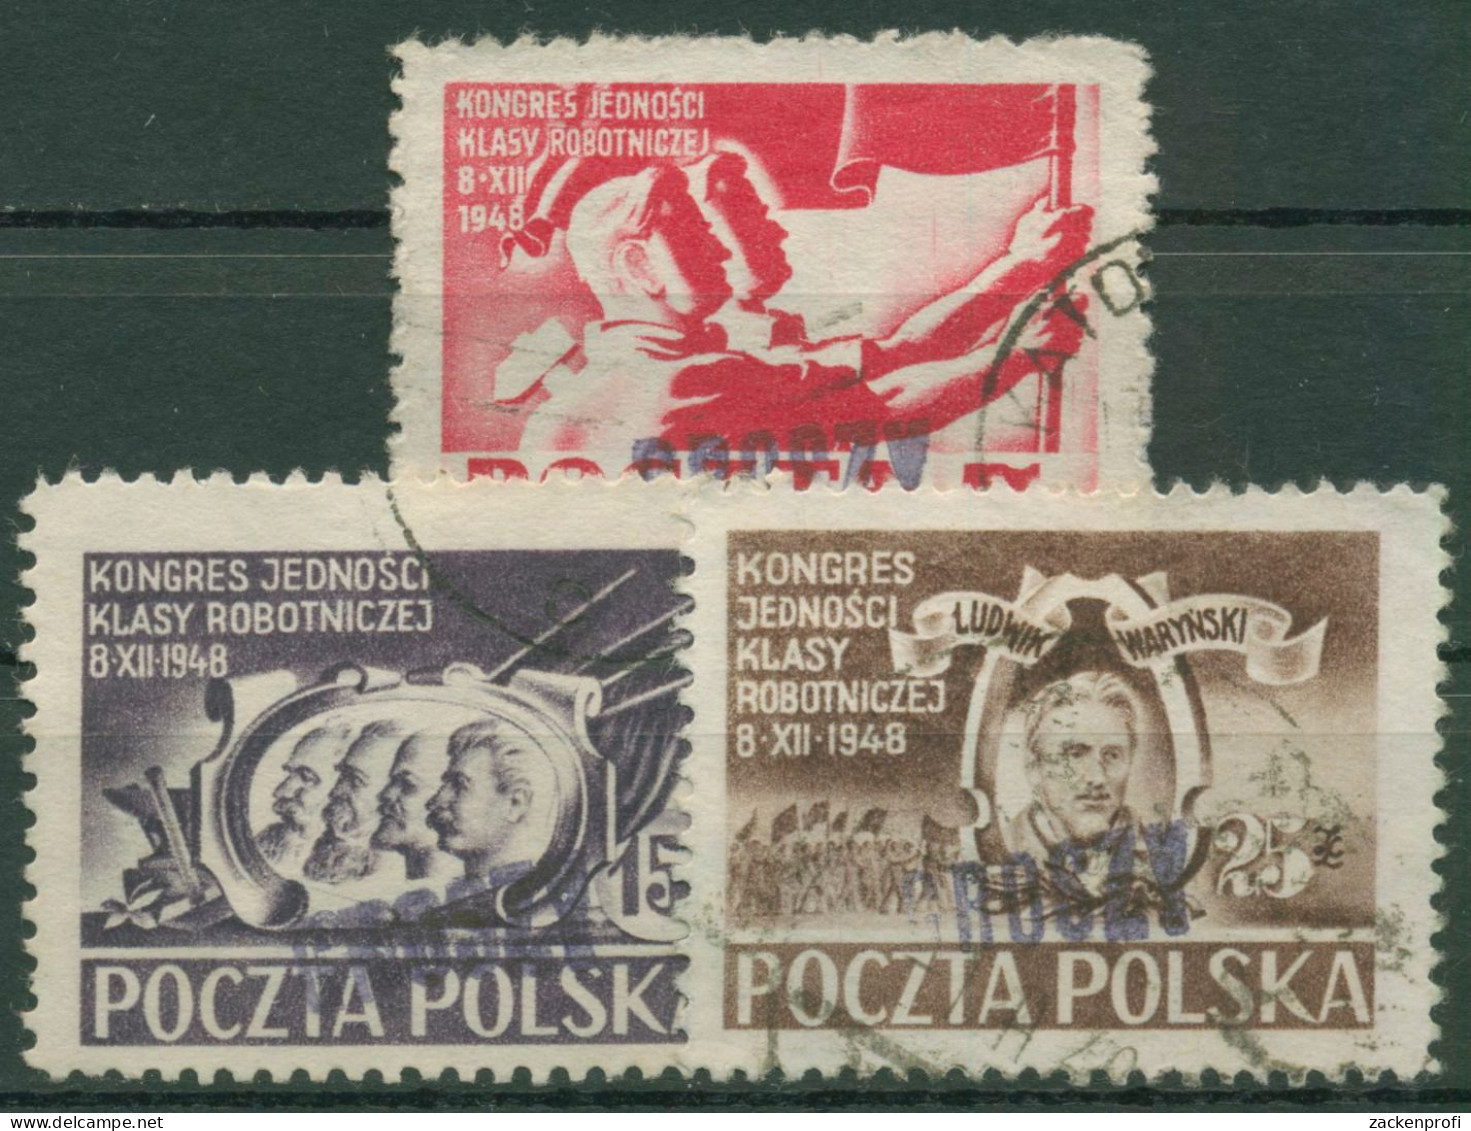 Polen 1950 Arbeiterpartei MiNr. 505/07 Mit Aufdruck 607/09 Gestempelt - Usados